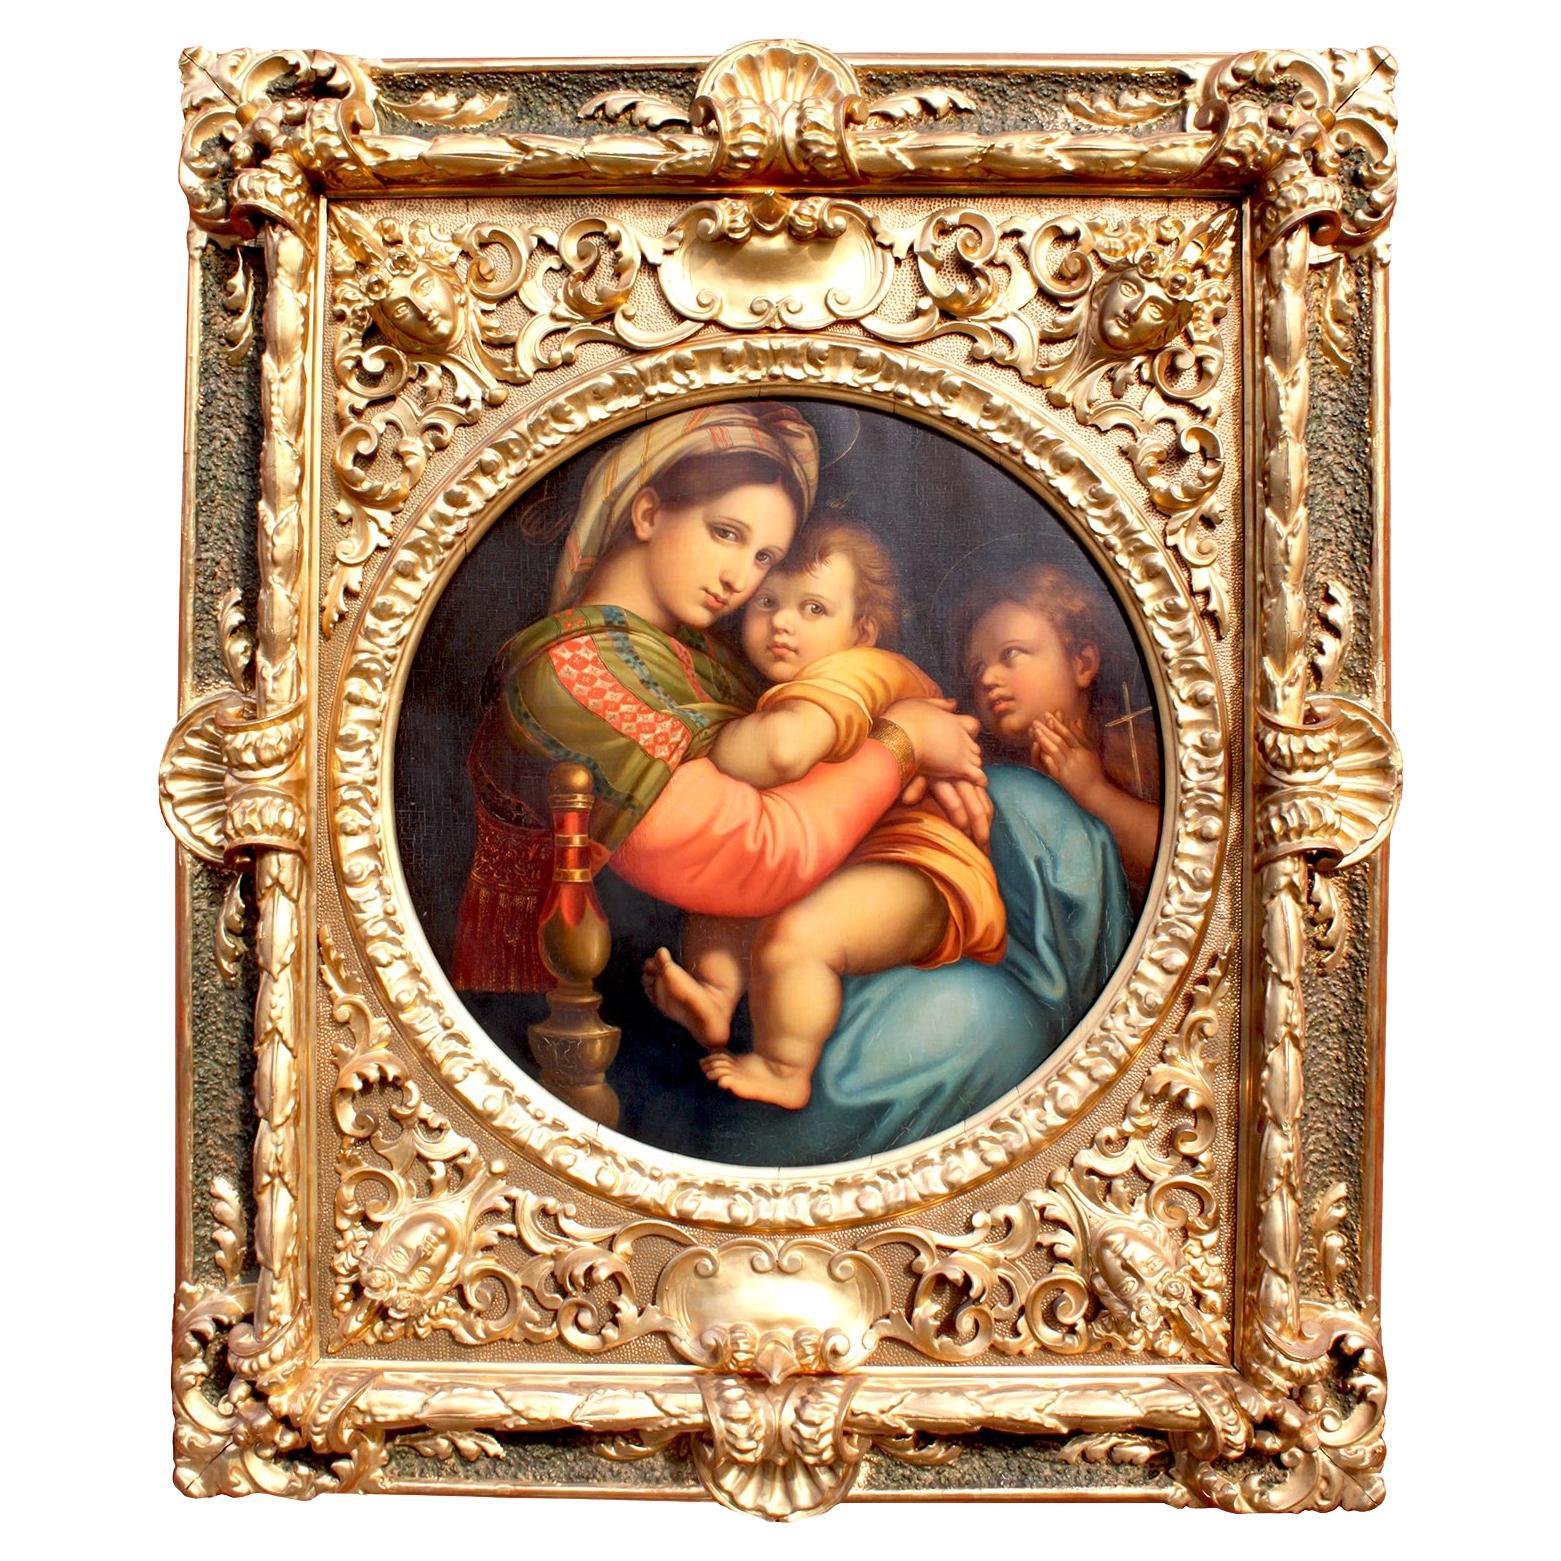 After Raffaello Sanzio 1483-1520 Raphael La Madonna della Seggiola Oil on Canvas